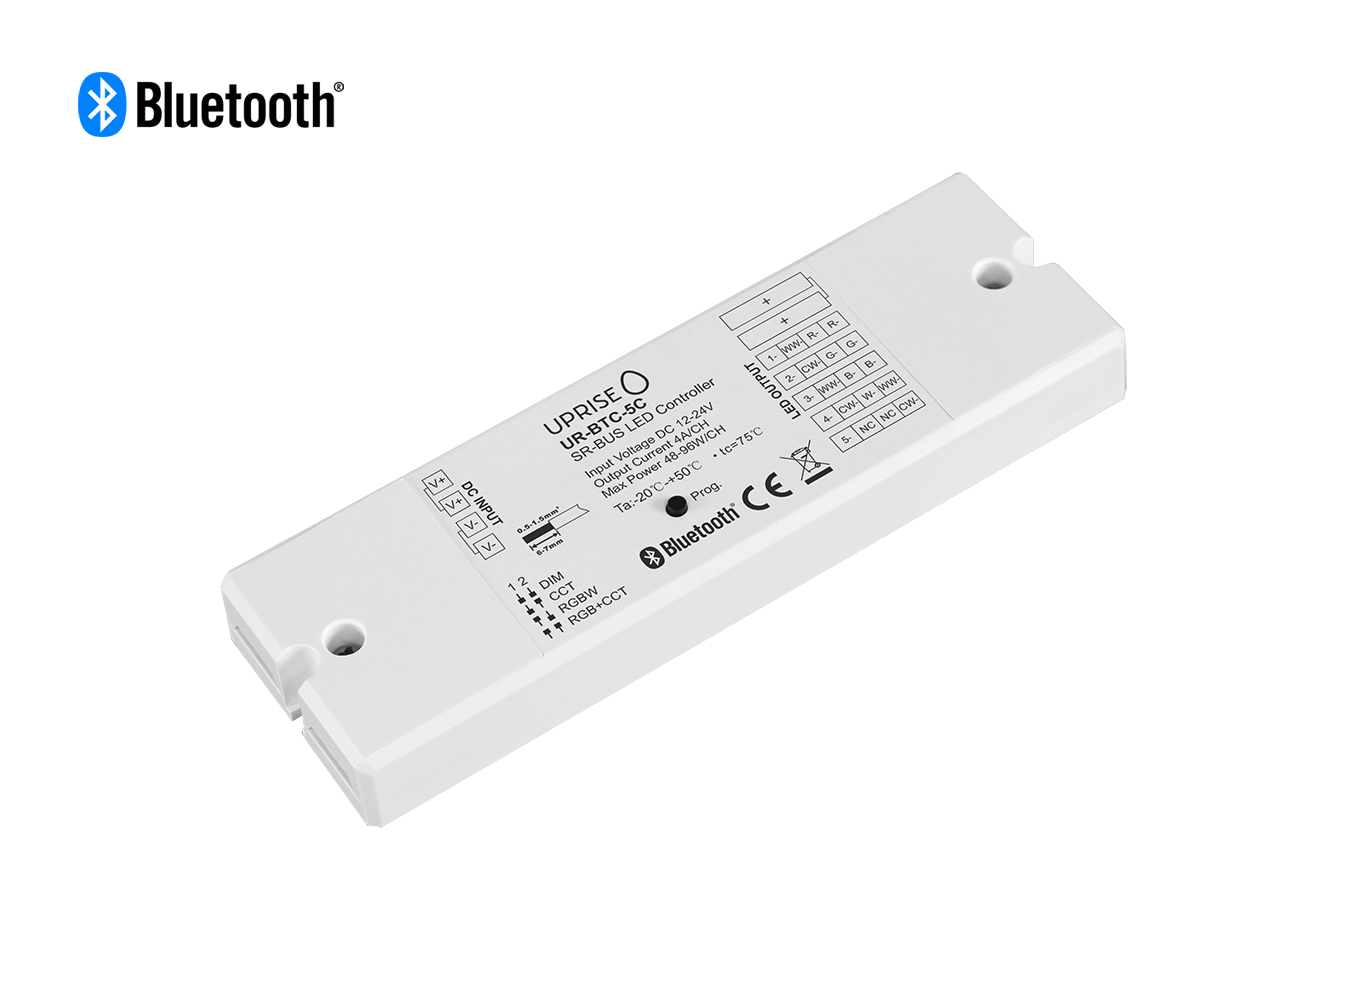 Bluetooth 5CH LED Controller Receiver For RGBCW (12V-24V) Diagonal - UR-BTC-5C